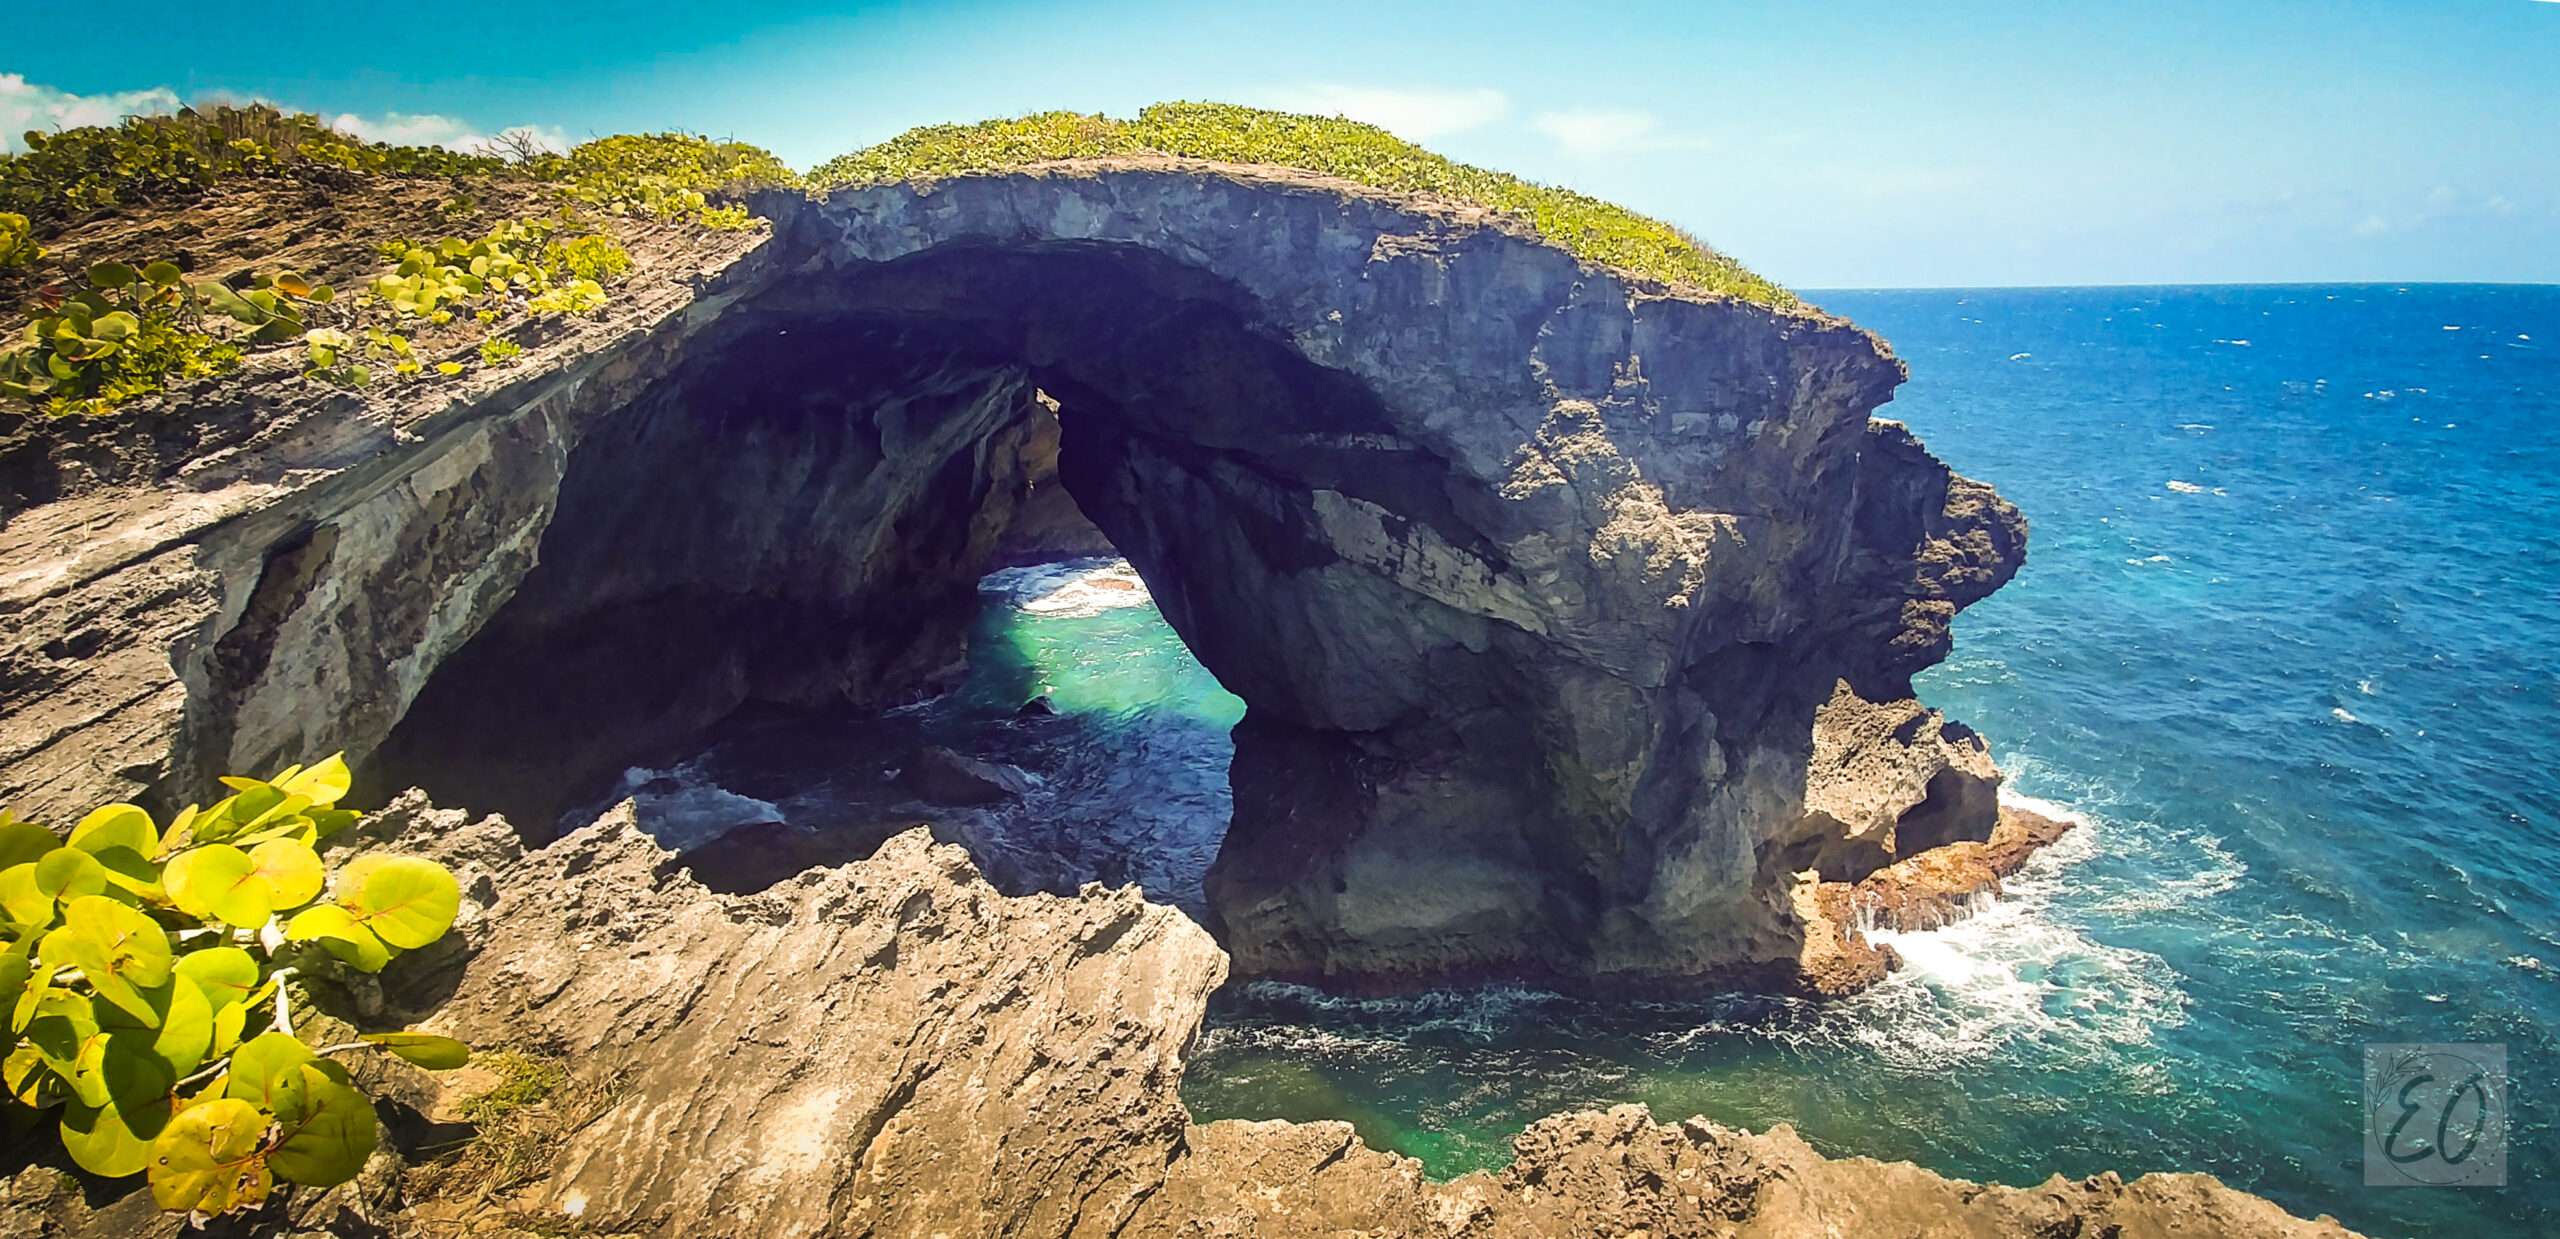 La Cueva del Indio en Puerto Rico